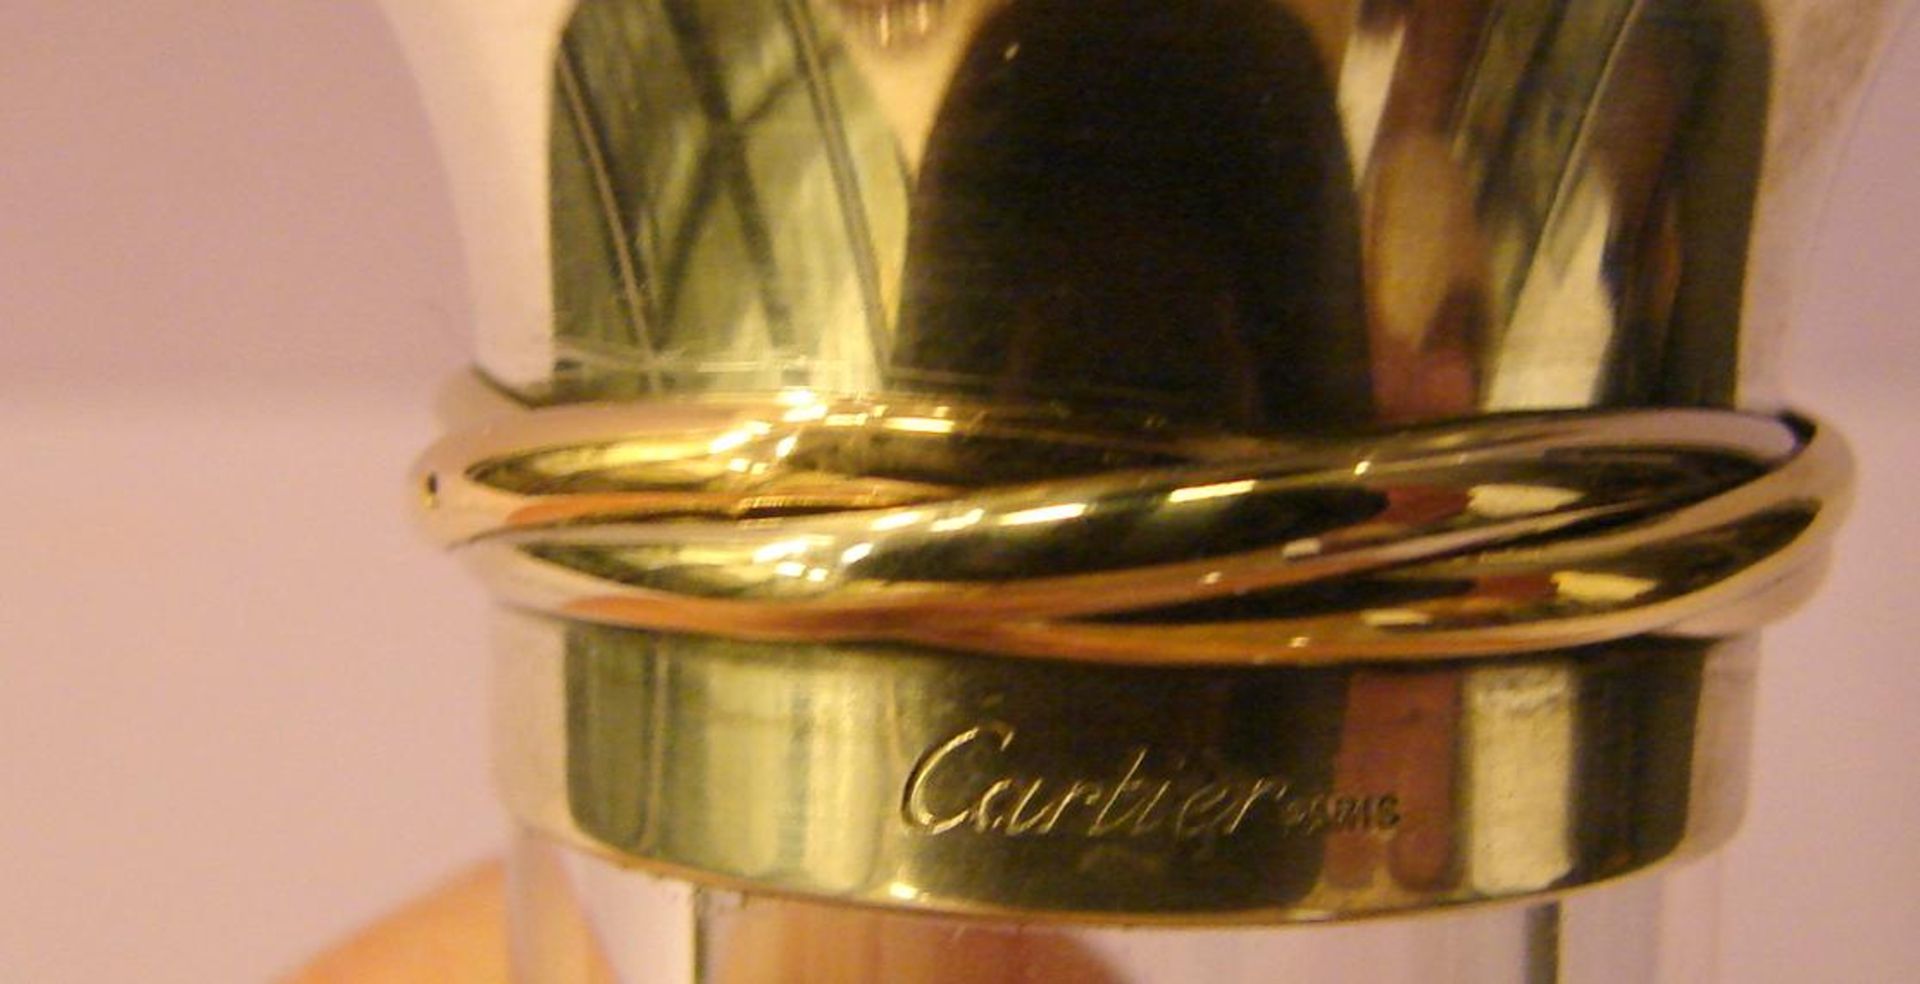 Karaffe, Glas, neuzeitlich, mit Silberhals (925er Silber), Frankreich, - Bild 2 aus 4